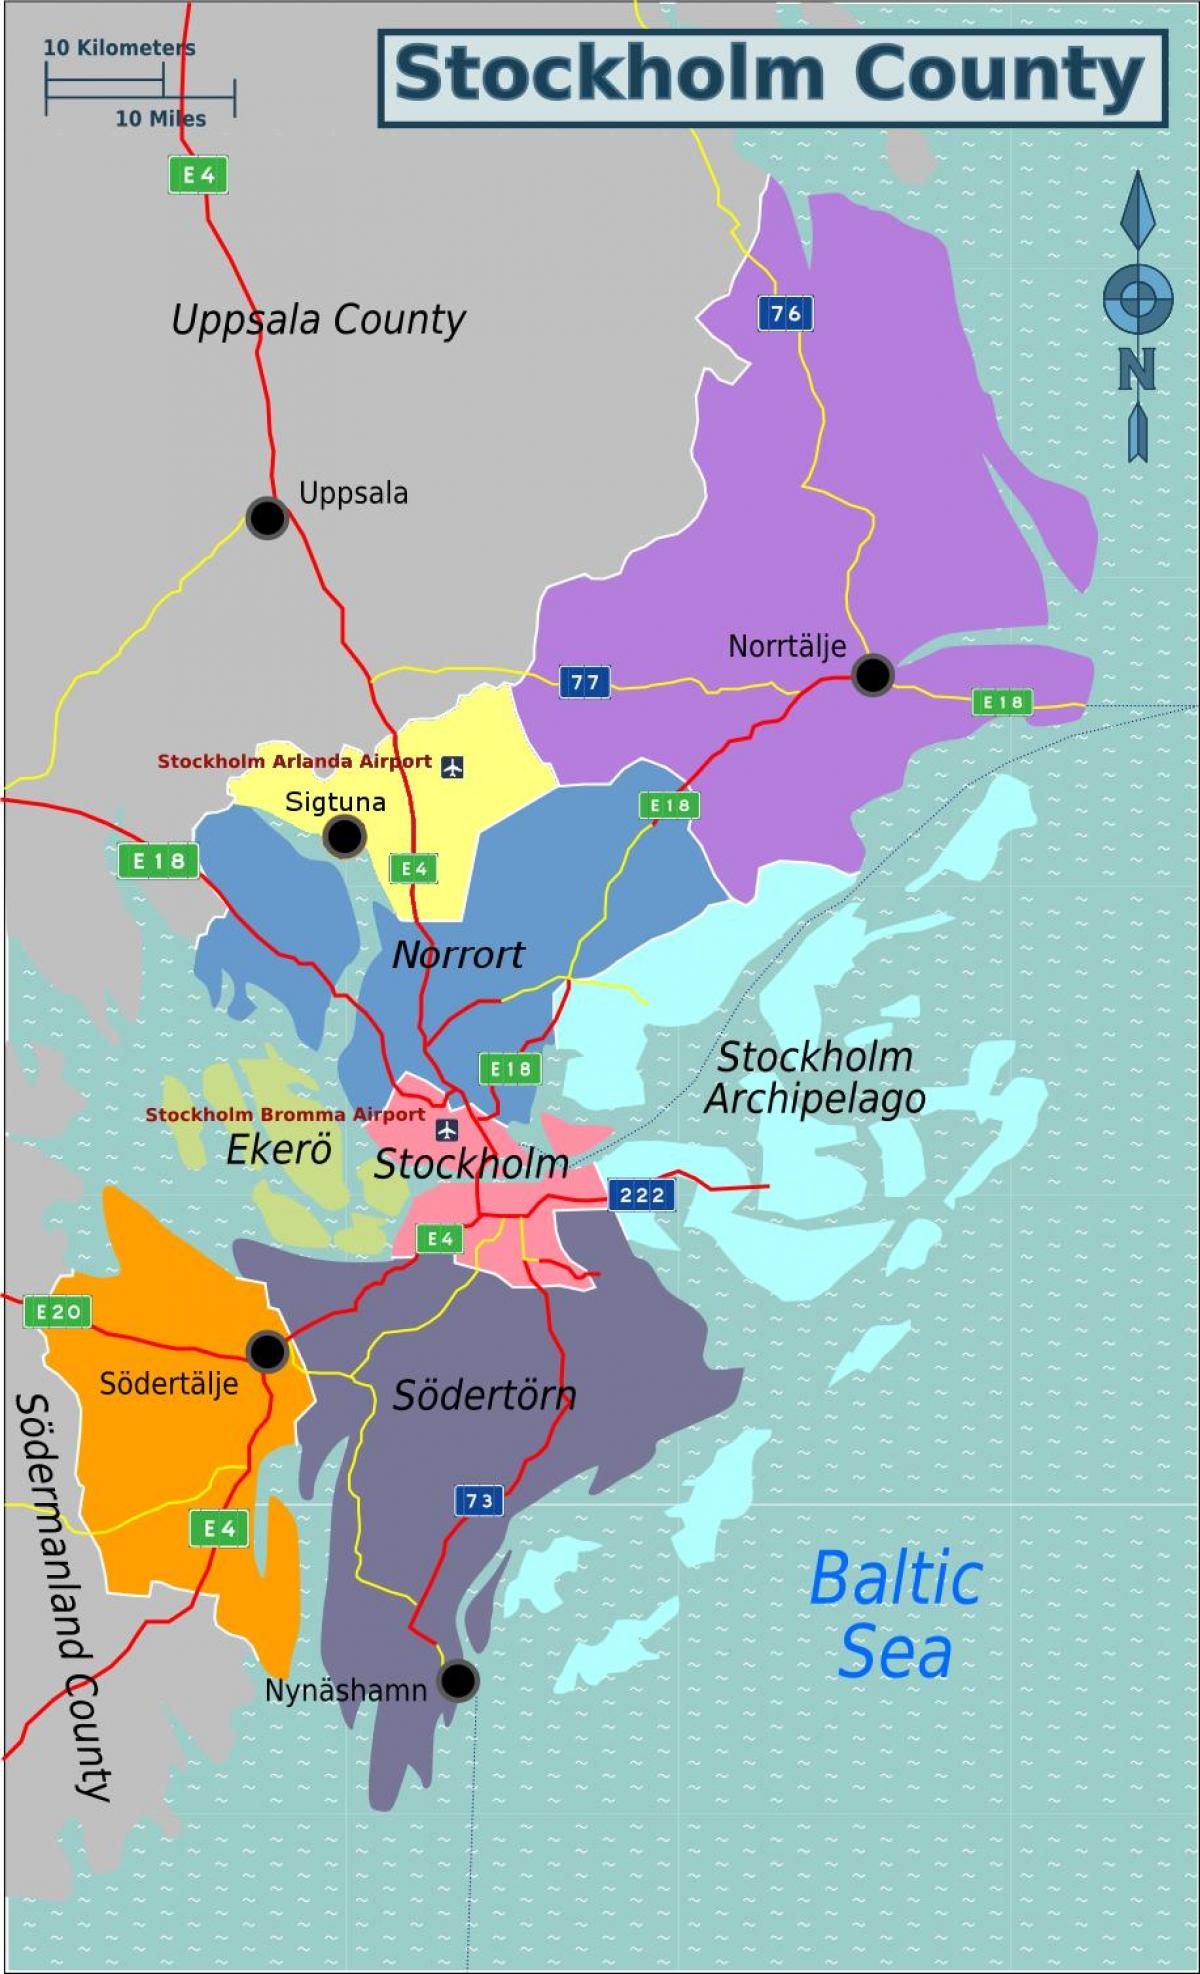 χάρτης του νομού της Στοκχόλμης